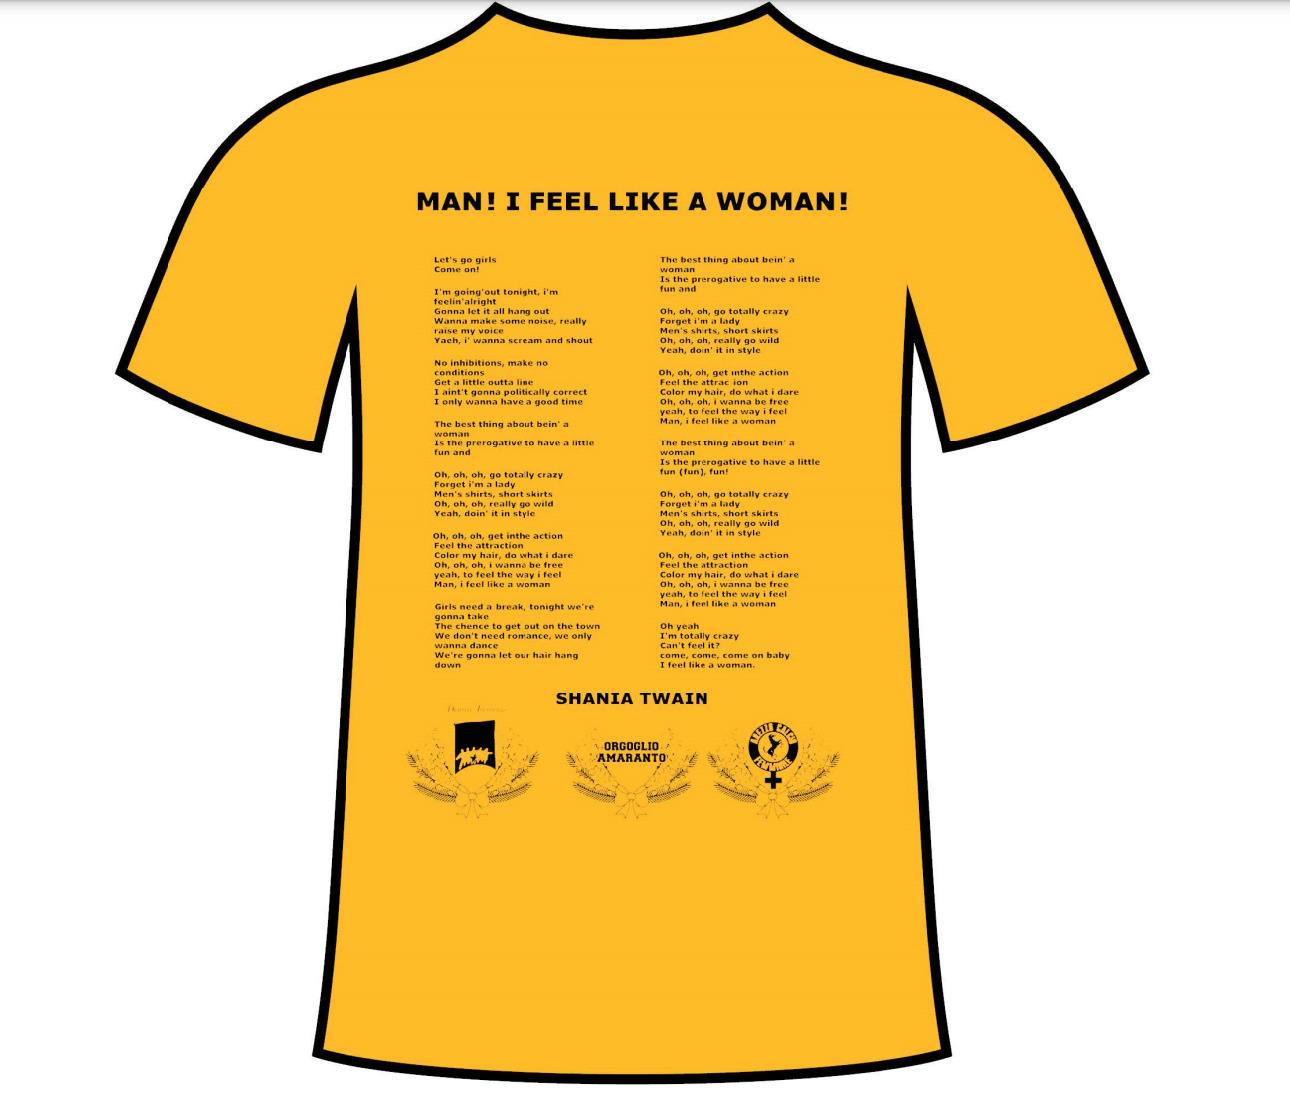 Acf Arezzo e 8 marzo, maglietta speciale per la raccolta fondi a favore di Donne Insieme